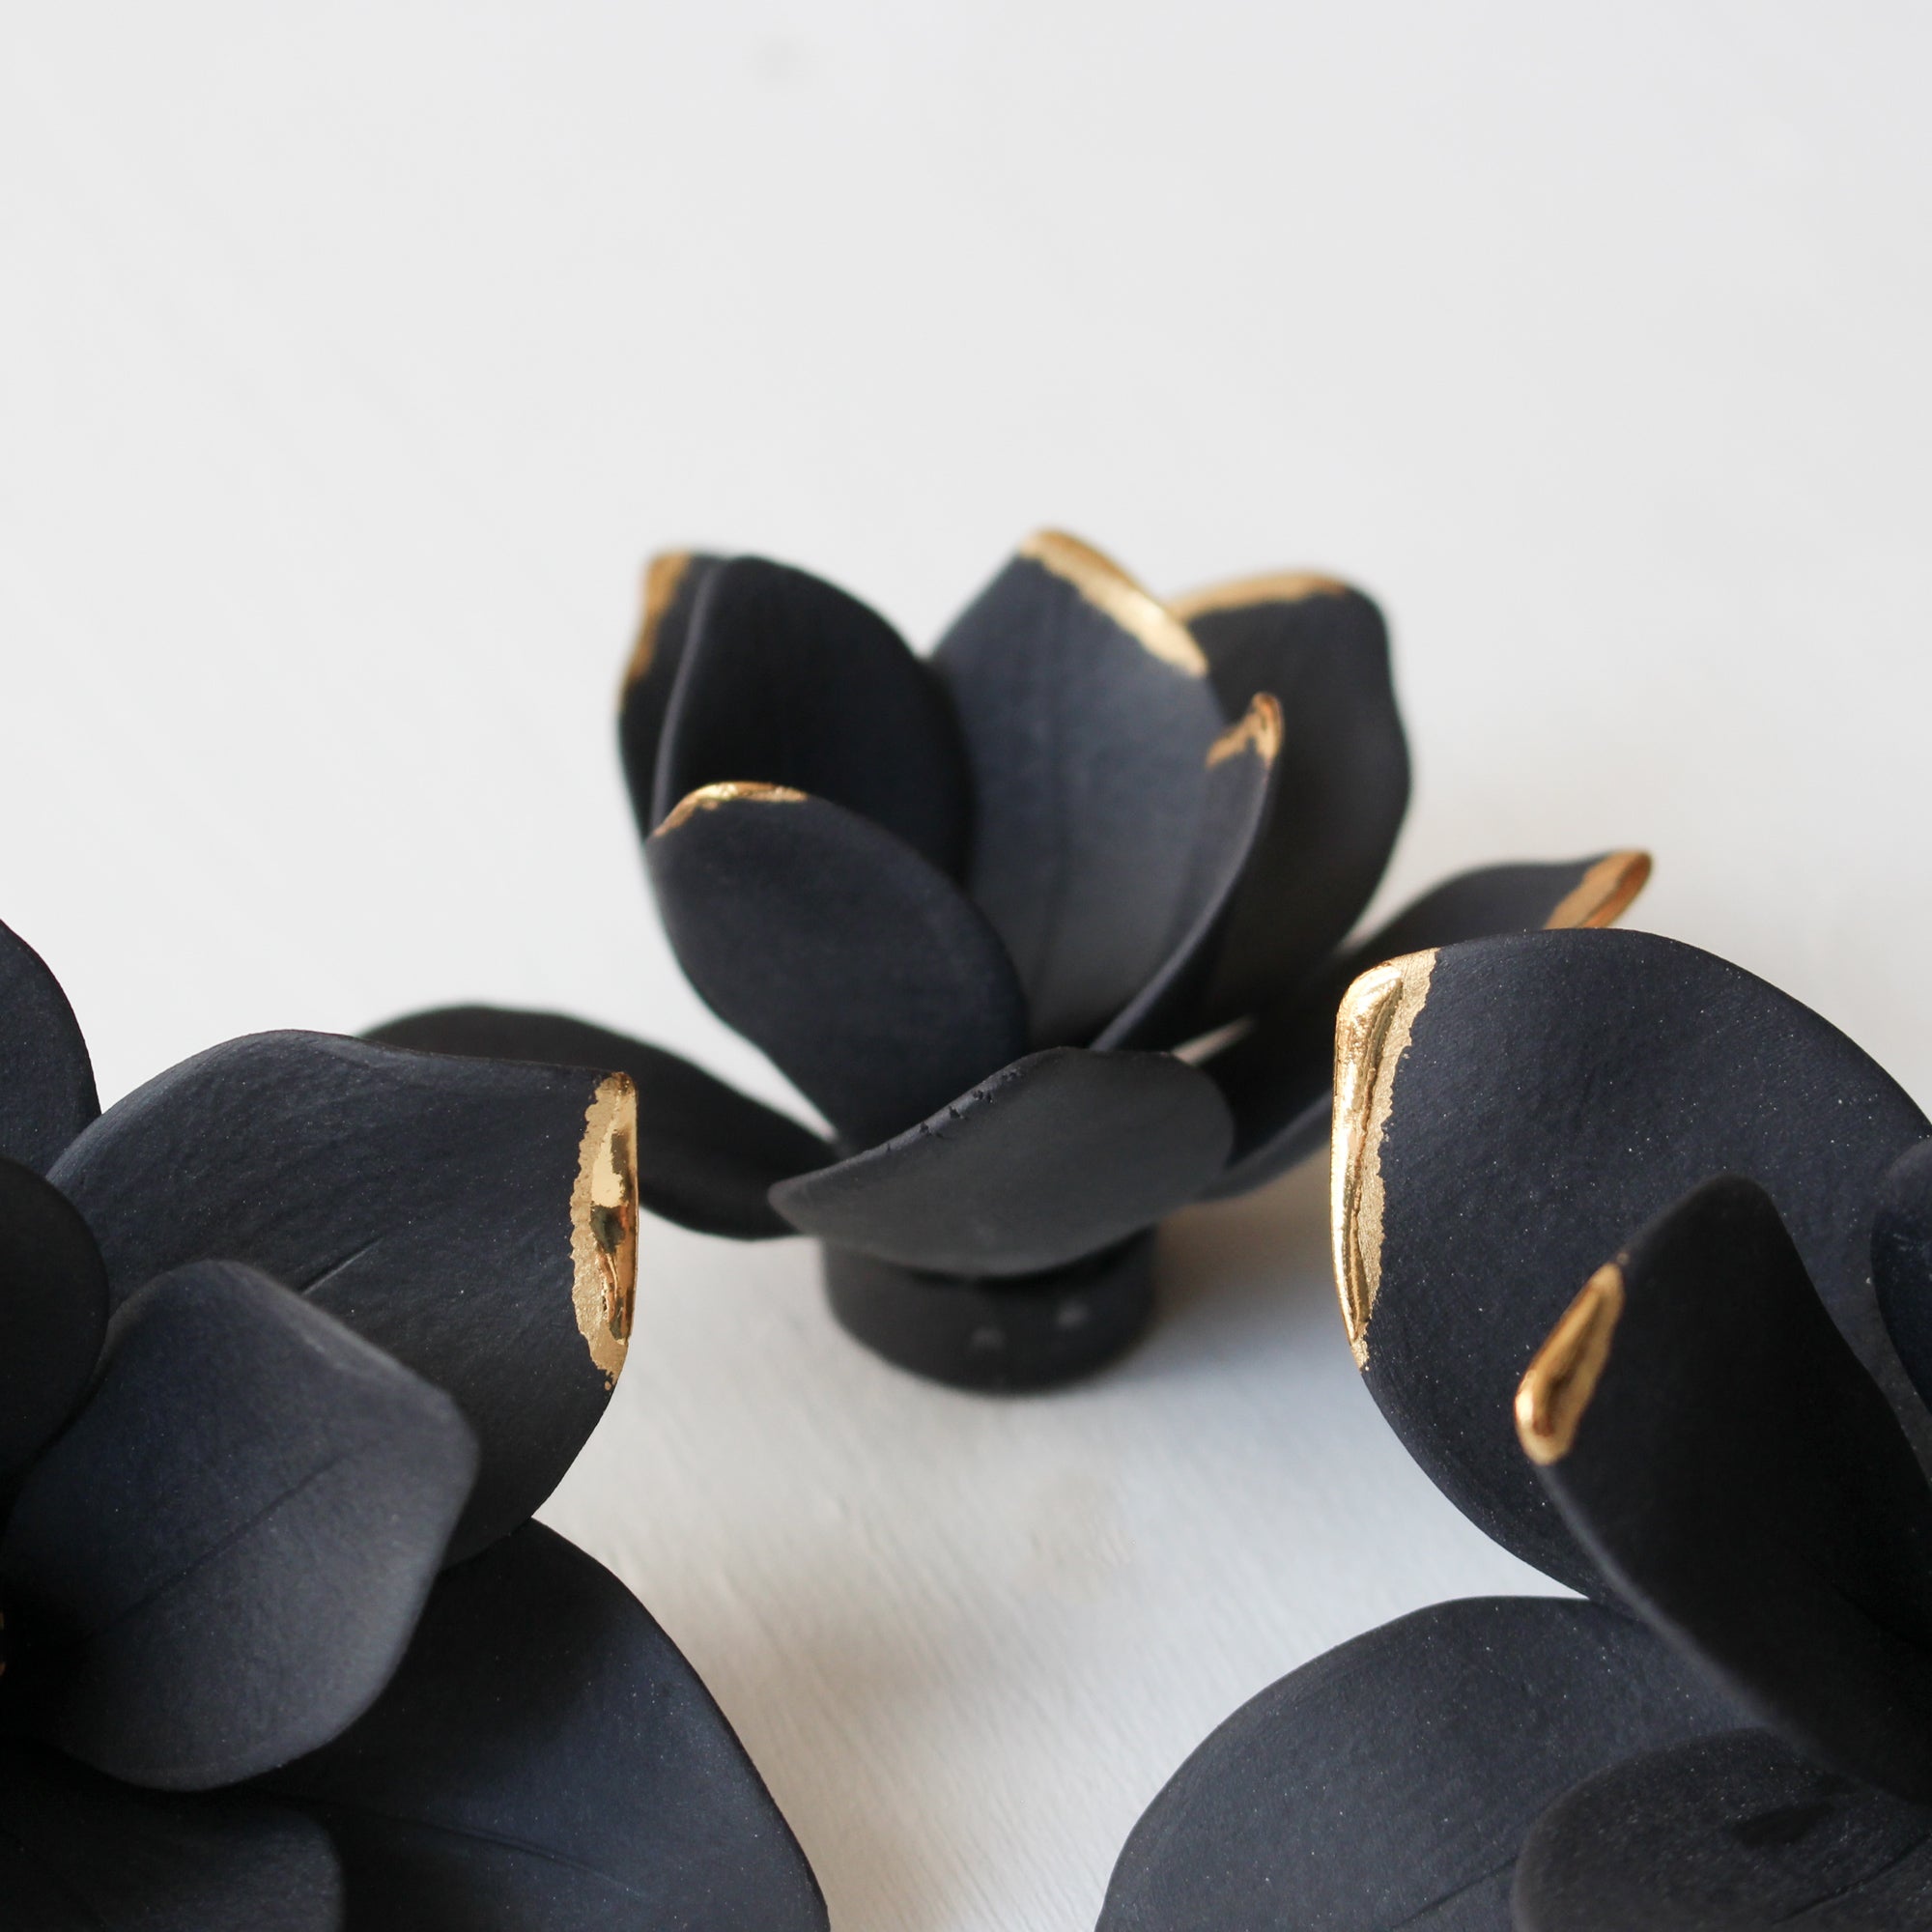 Black Magnolias